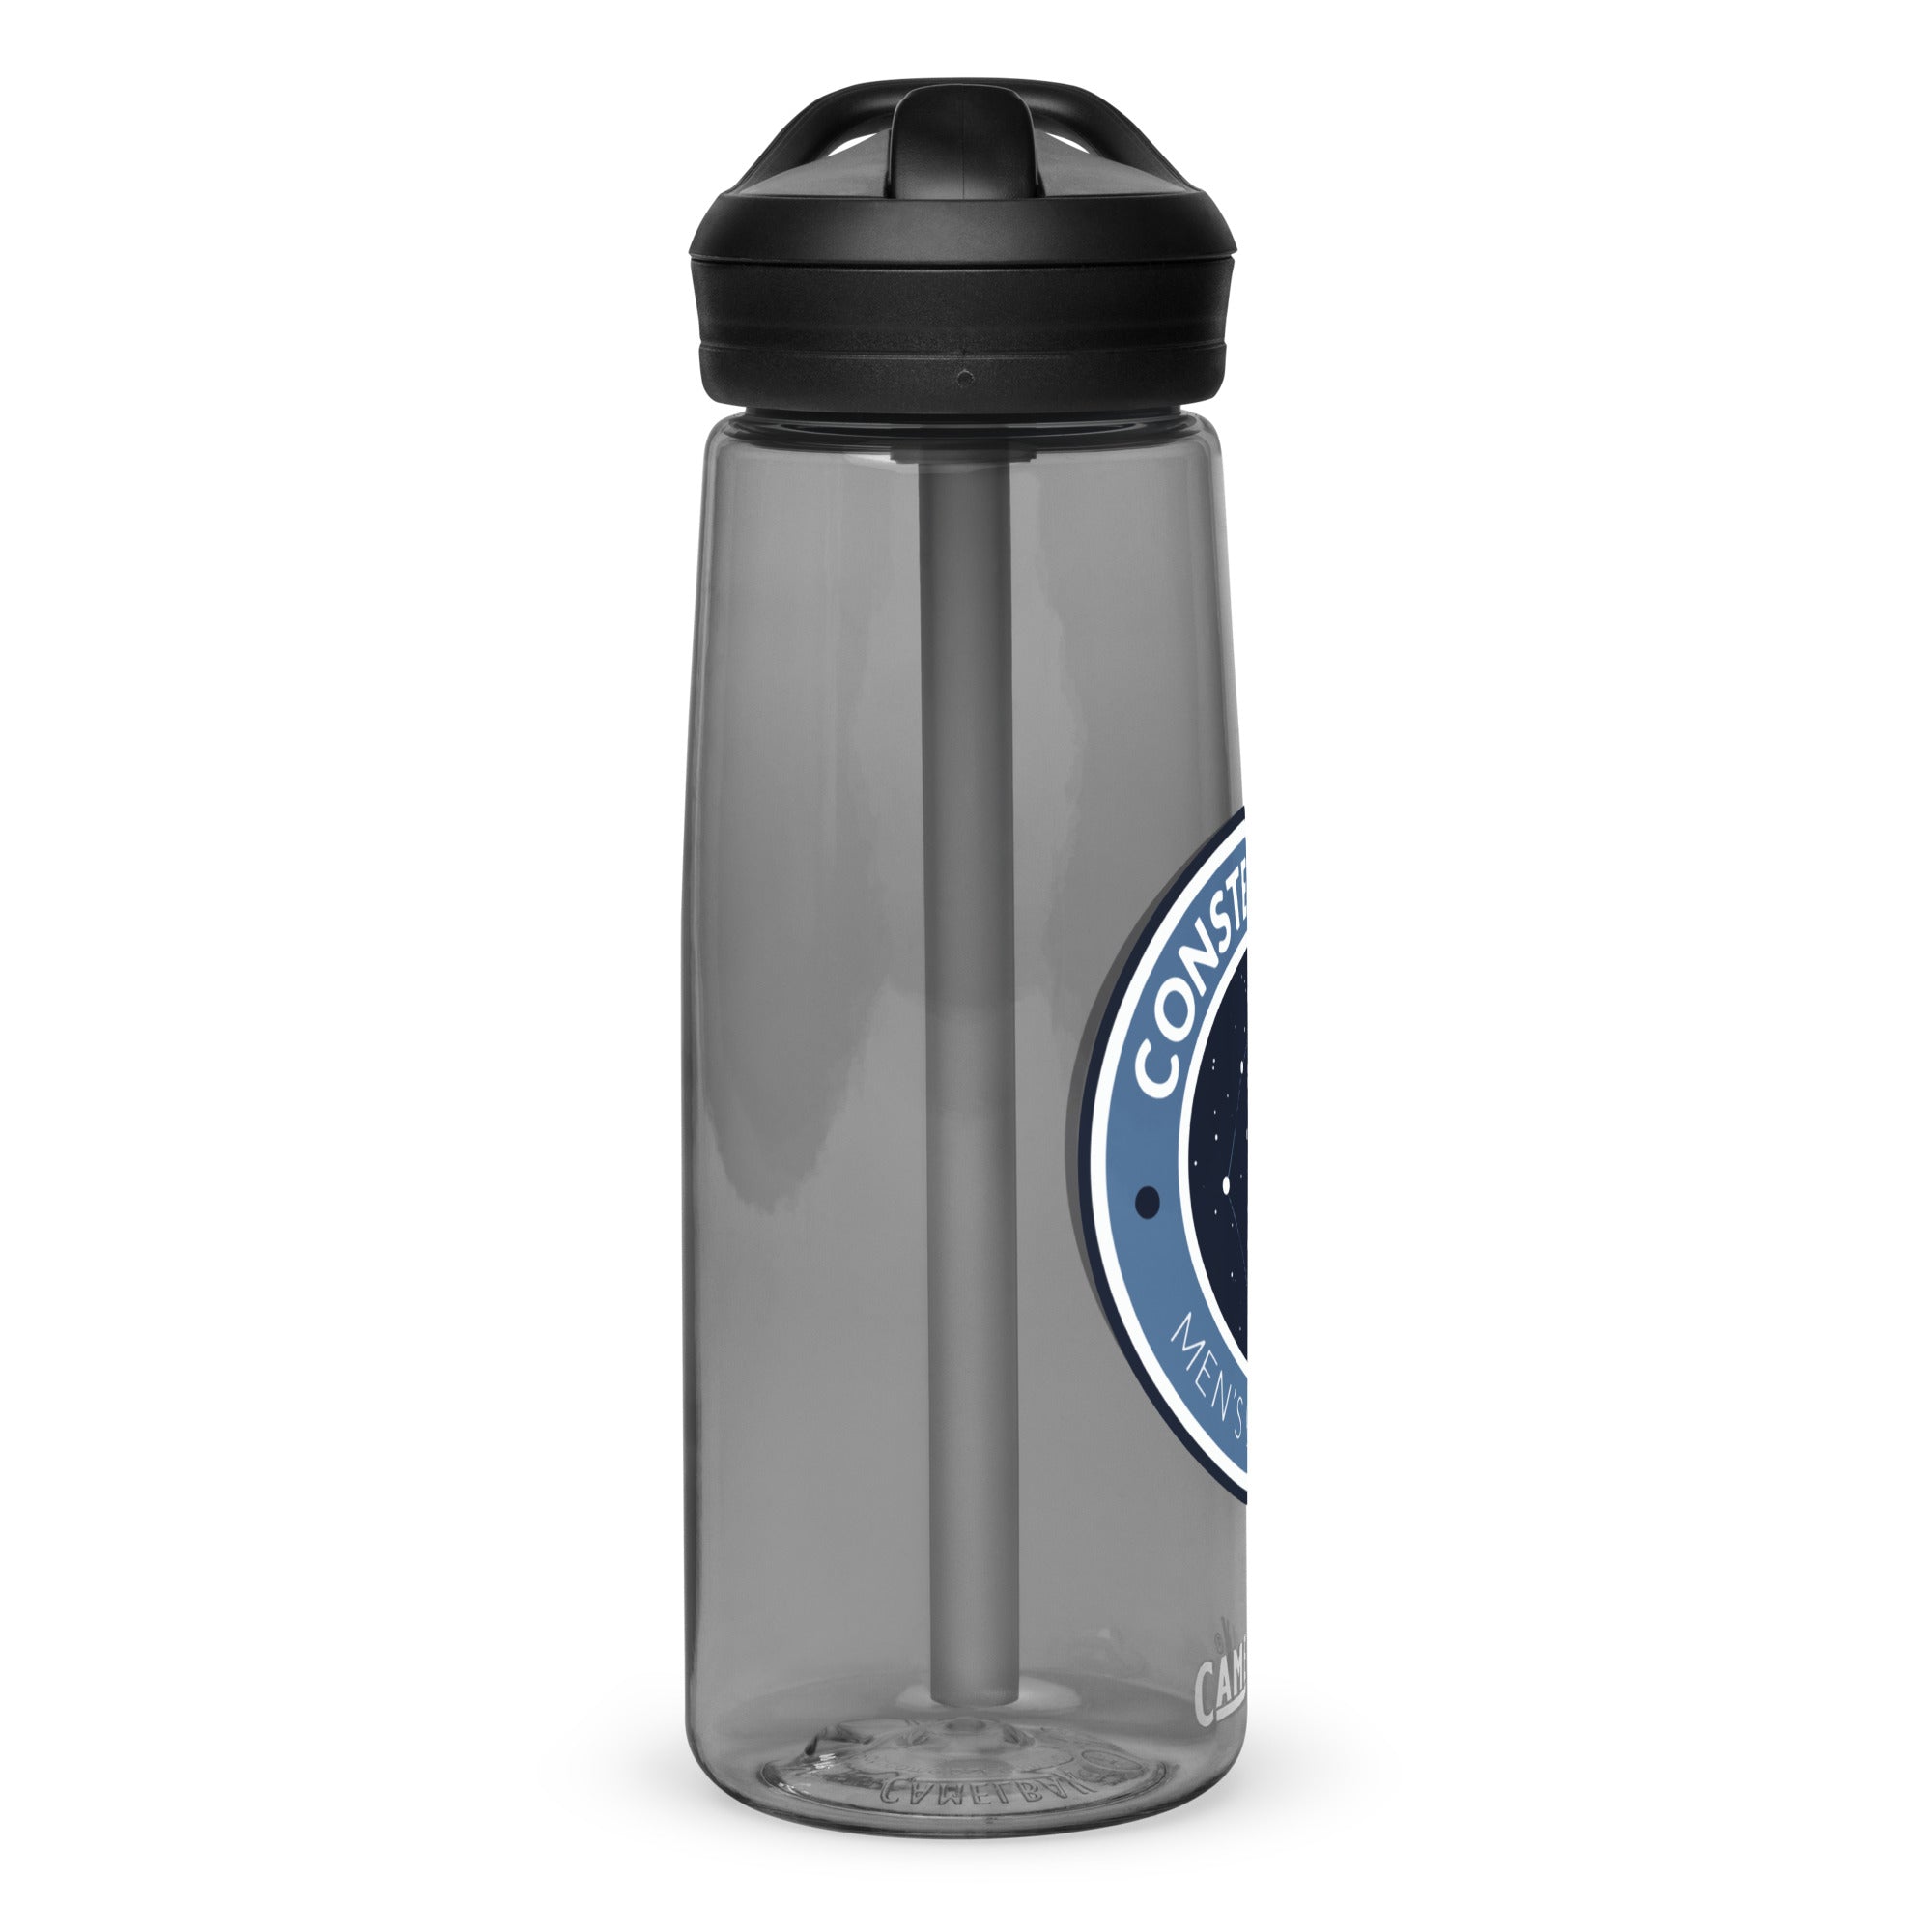 CME Sports water bottle